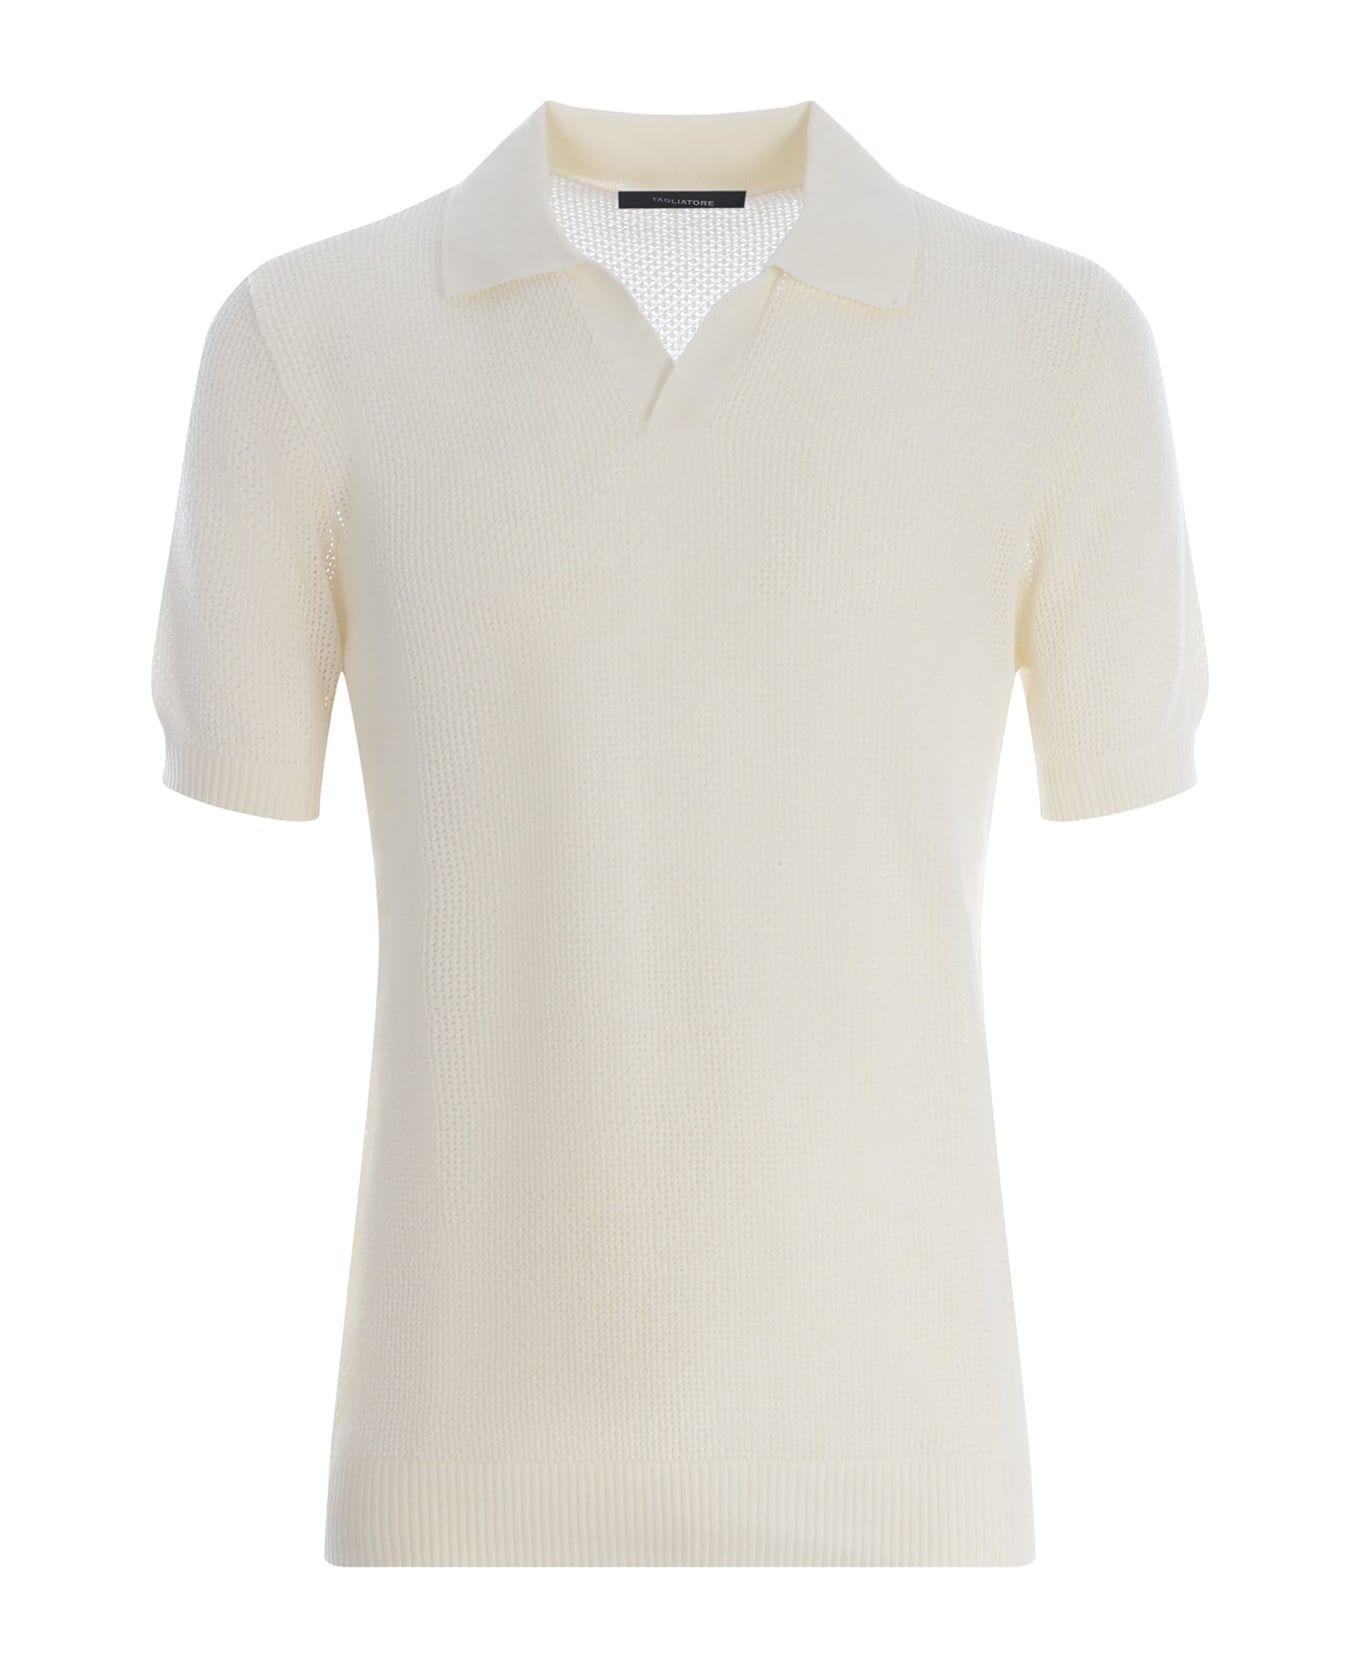 Tagliatore Polo Shirt Tagliatore Made Of Cotton Thread - Off white ポロシャツ